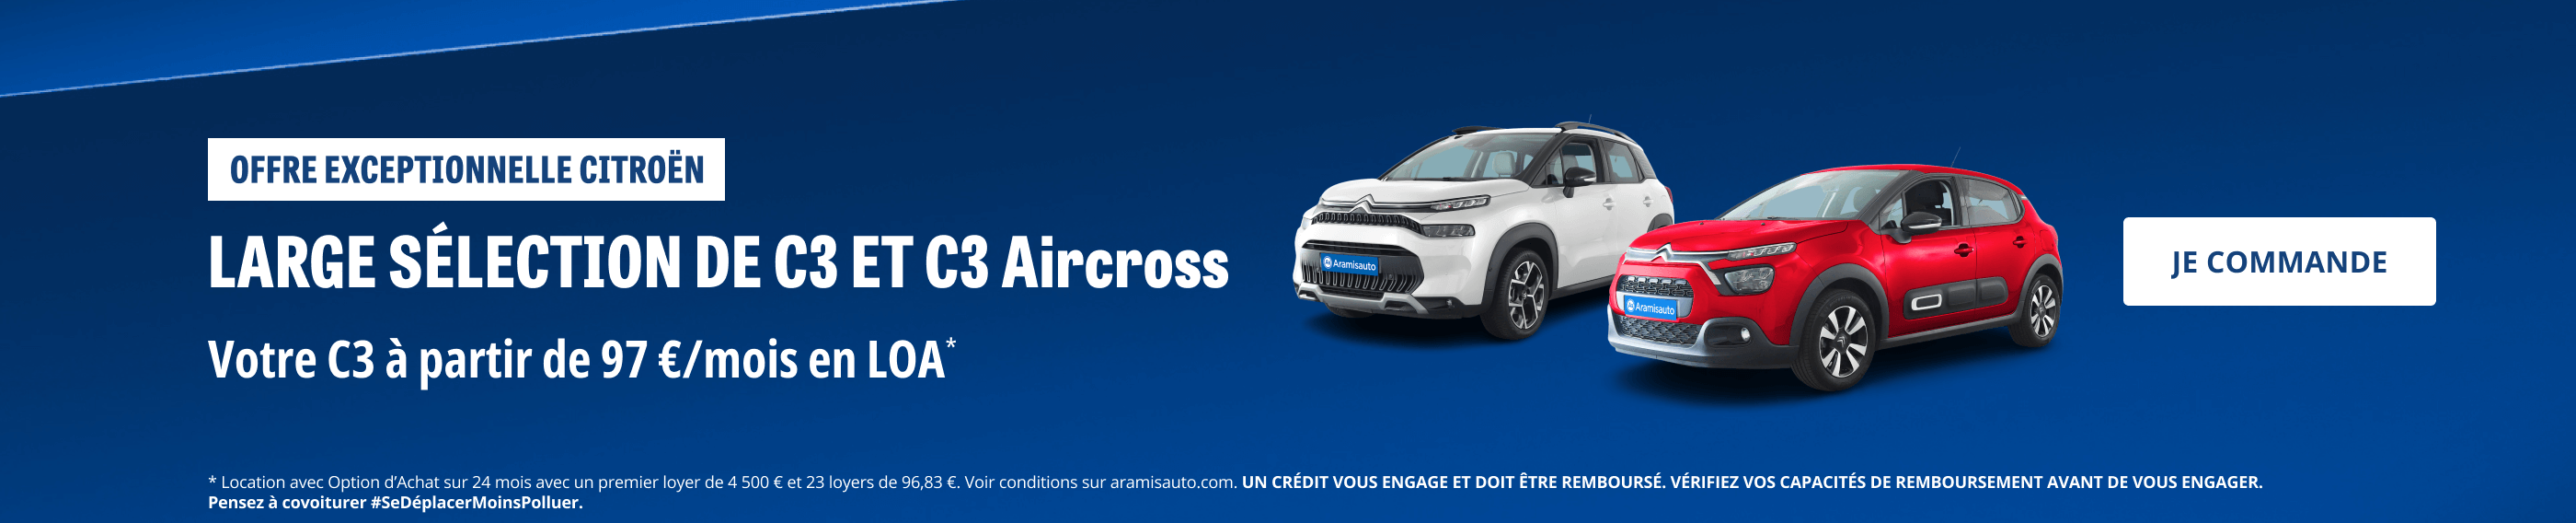 Offre exceptionnelle Citroën. Large sélection de C3 et C3 Aircross. Votre C3 à partir de 97€/mois en LOA. Je commande